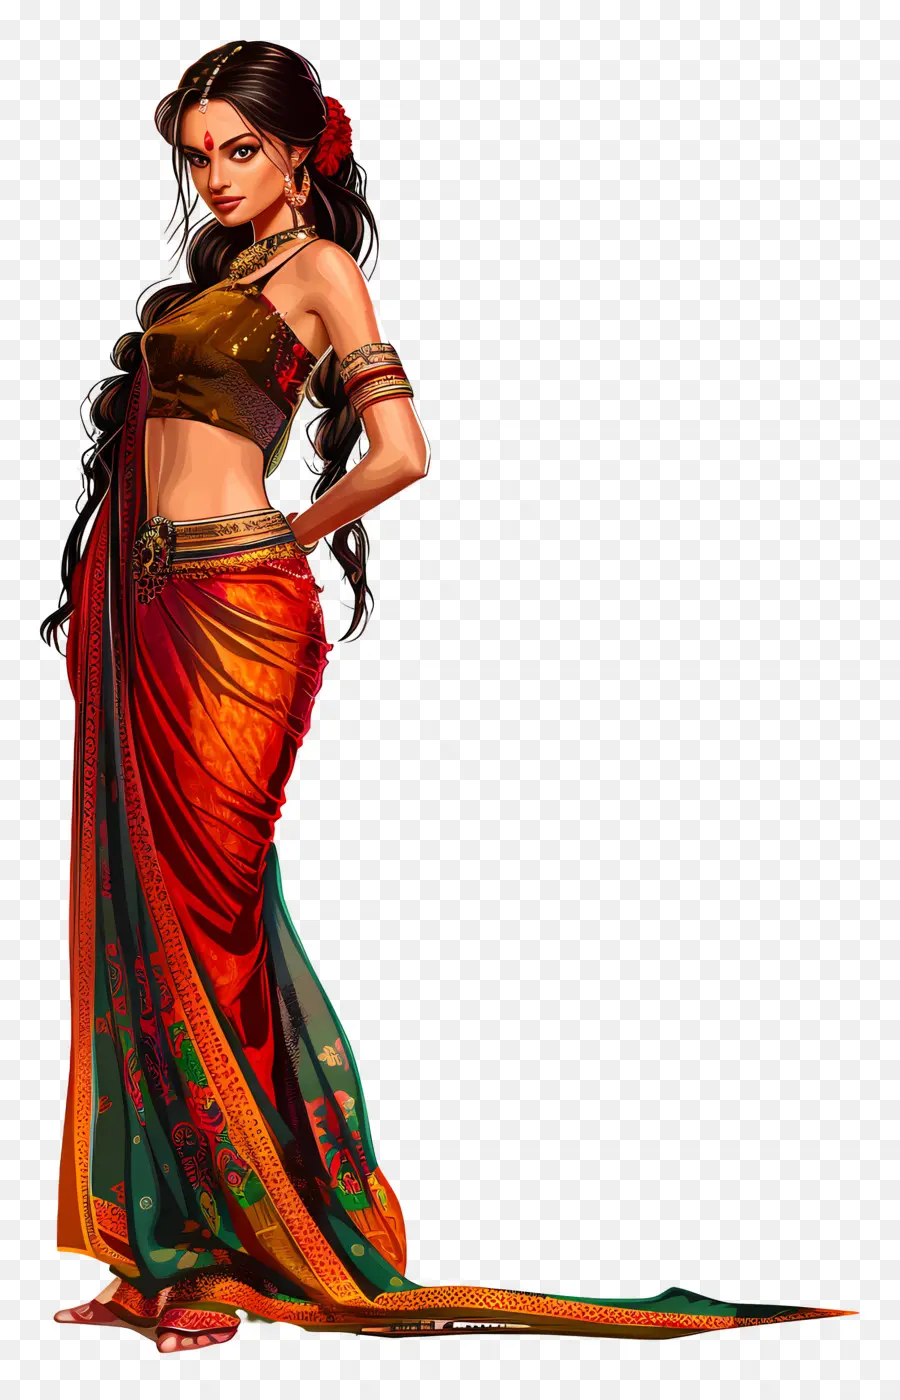 saanjh banarasi saree indian sari traditional dress jewelry dark hair